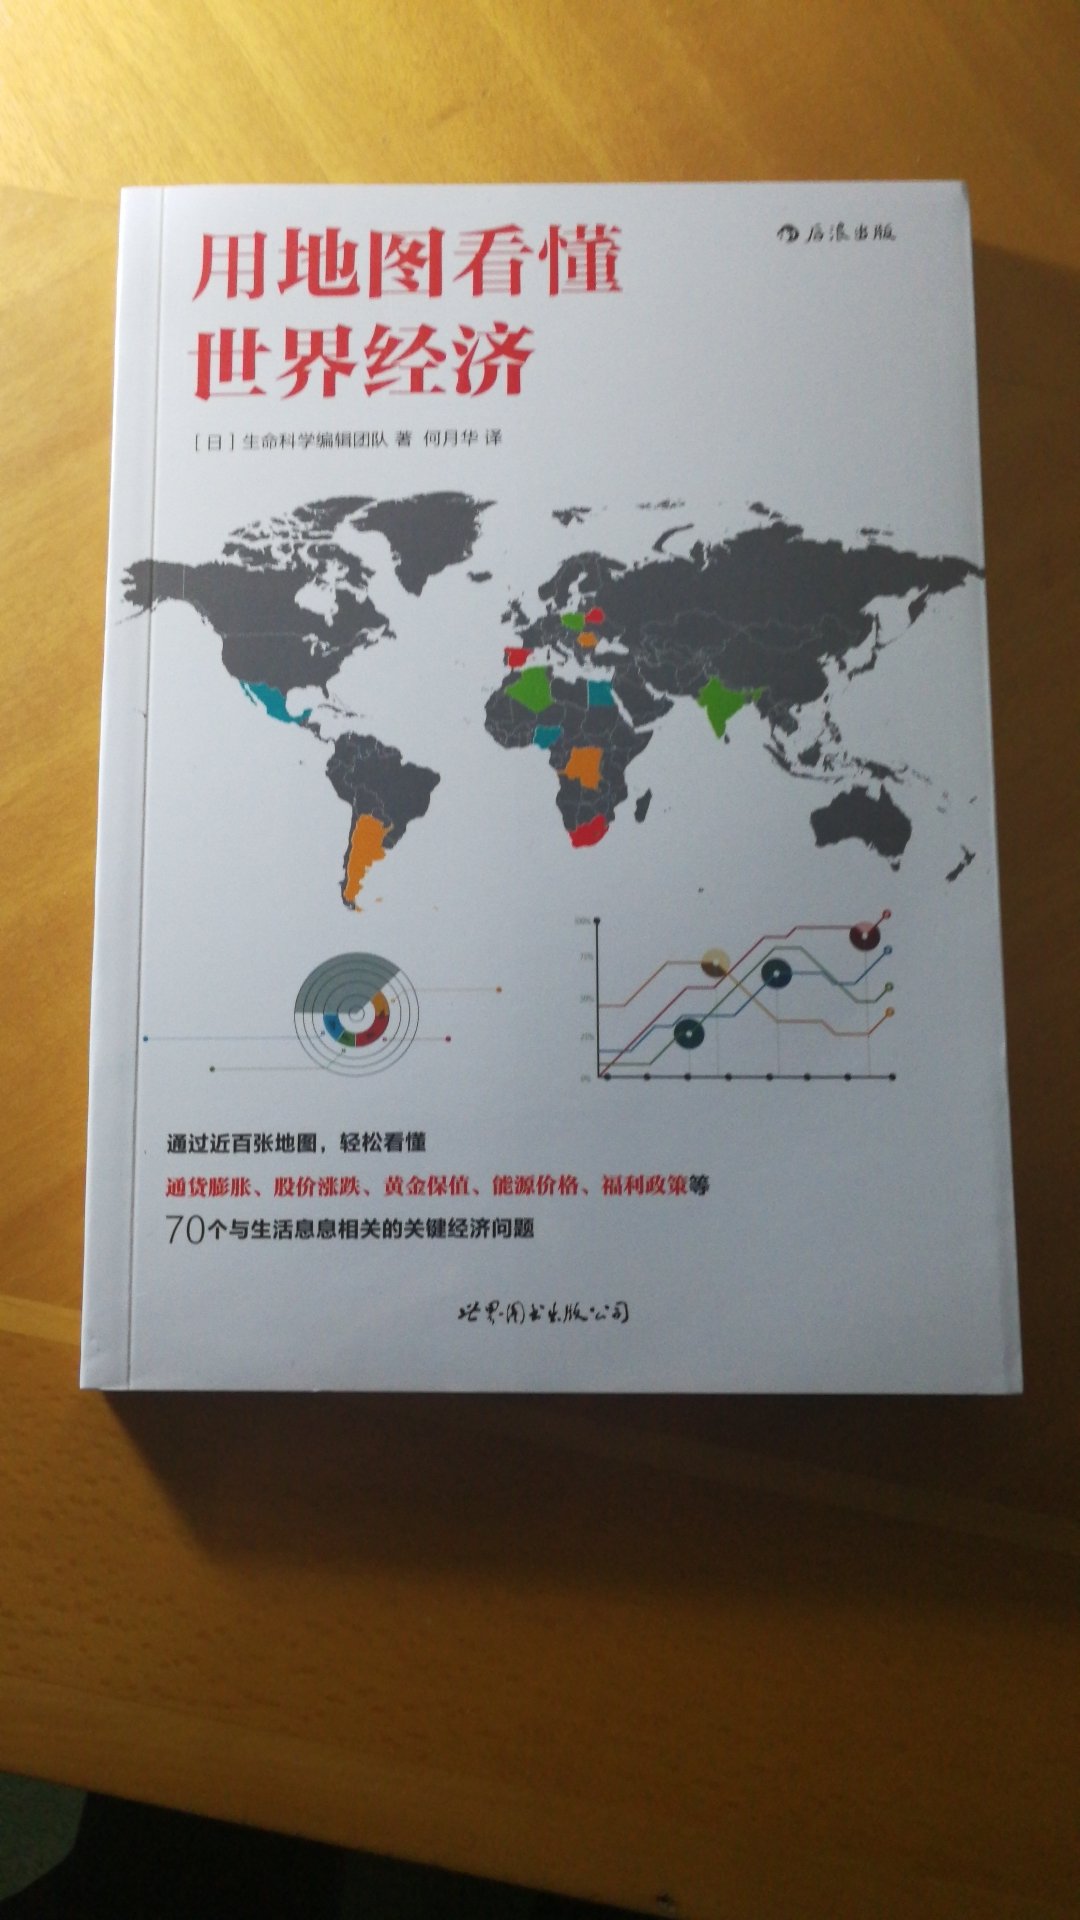 通过读此书可以了解世界经济问题和一些基本的经济知识。